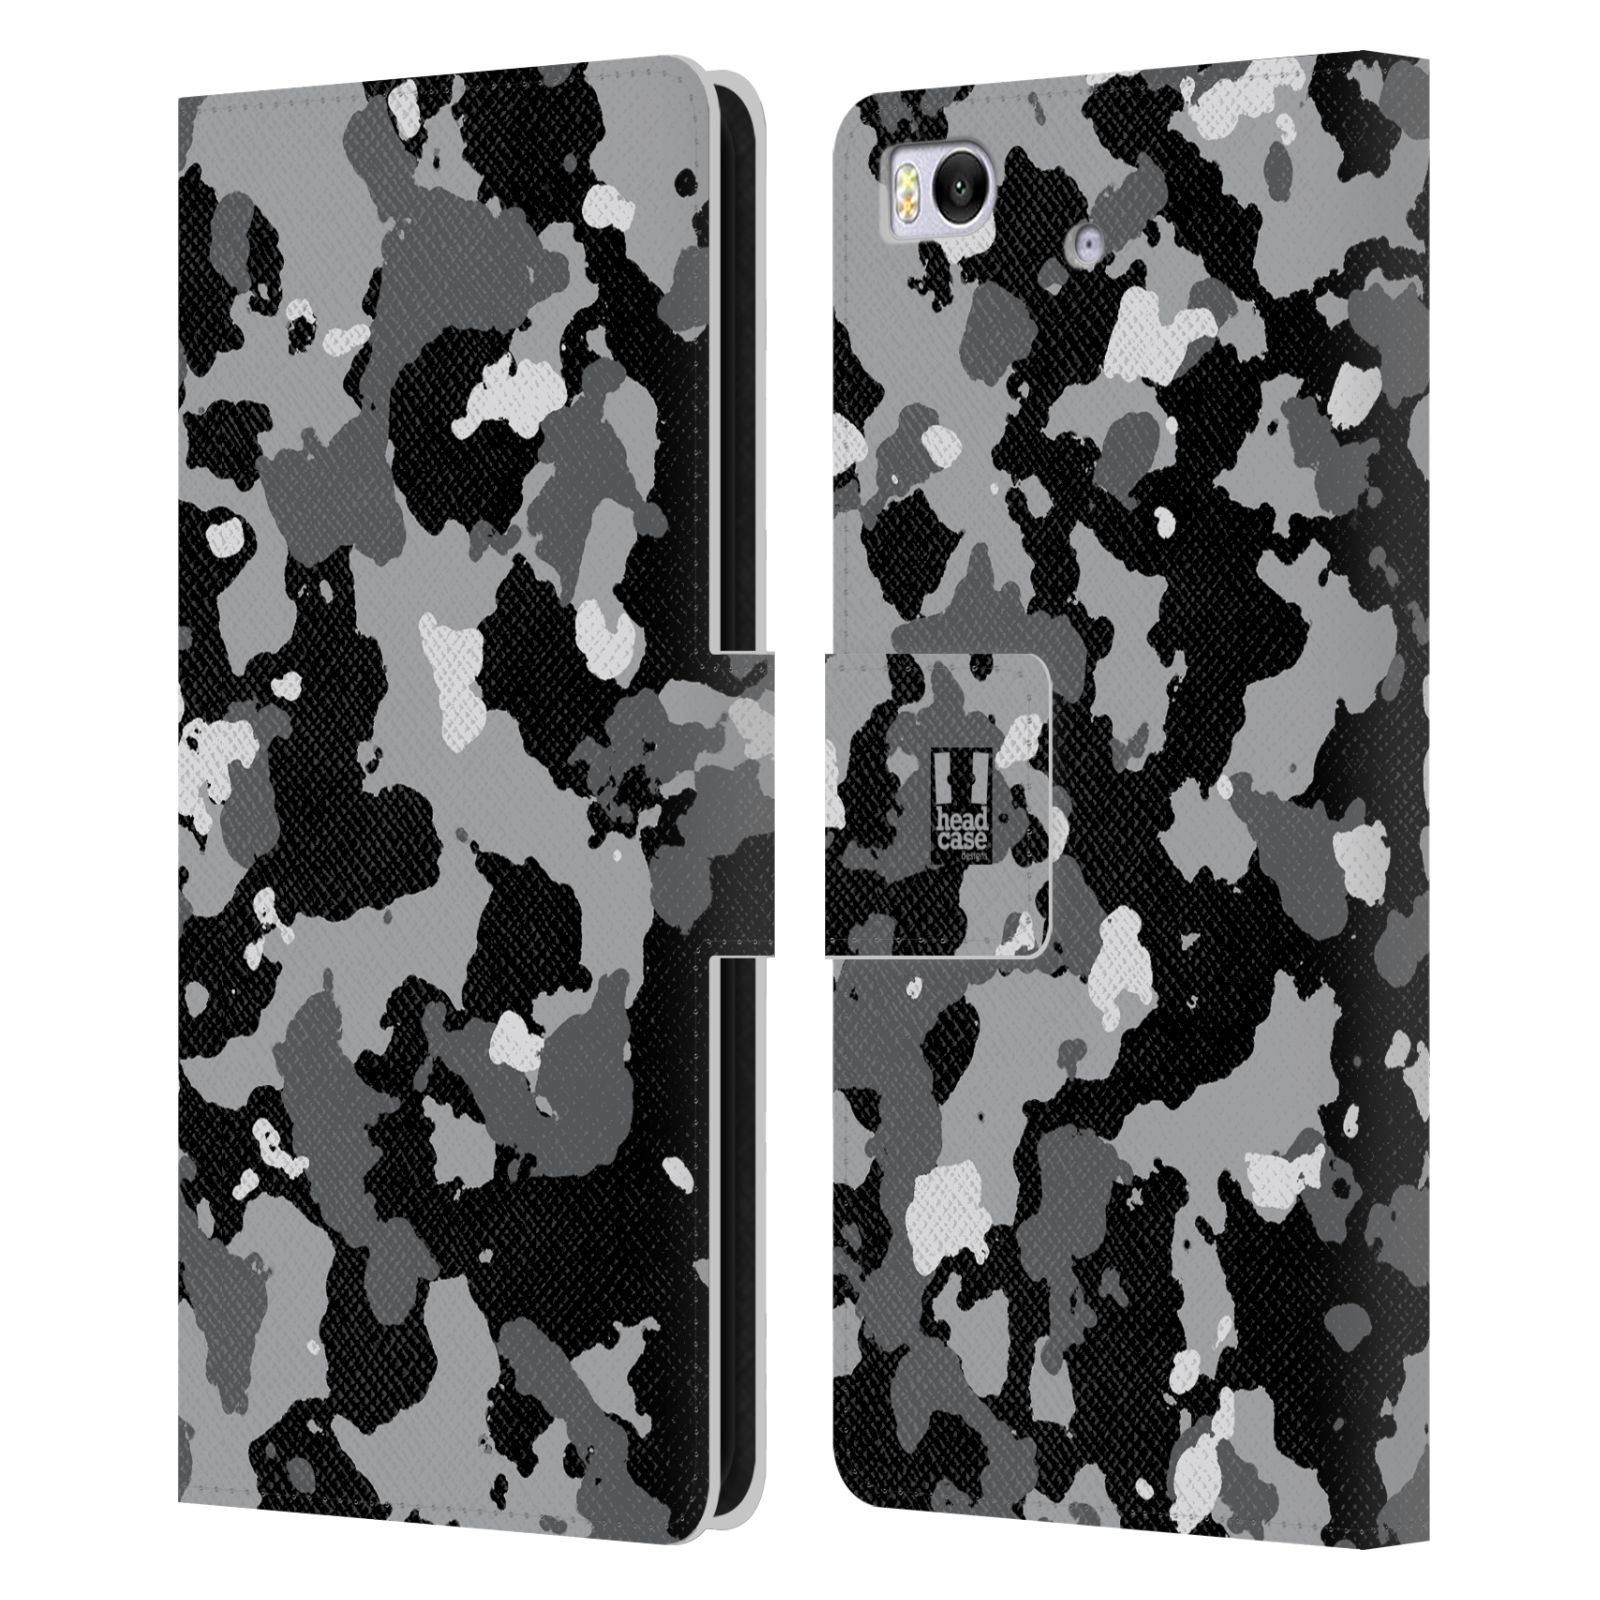 Pouzdro na mobil Xiaomi Mi 5s - Head Case - kamuflaž černá a šedá